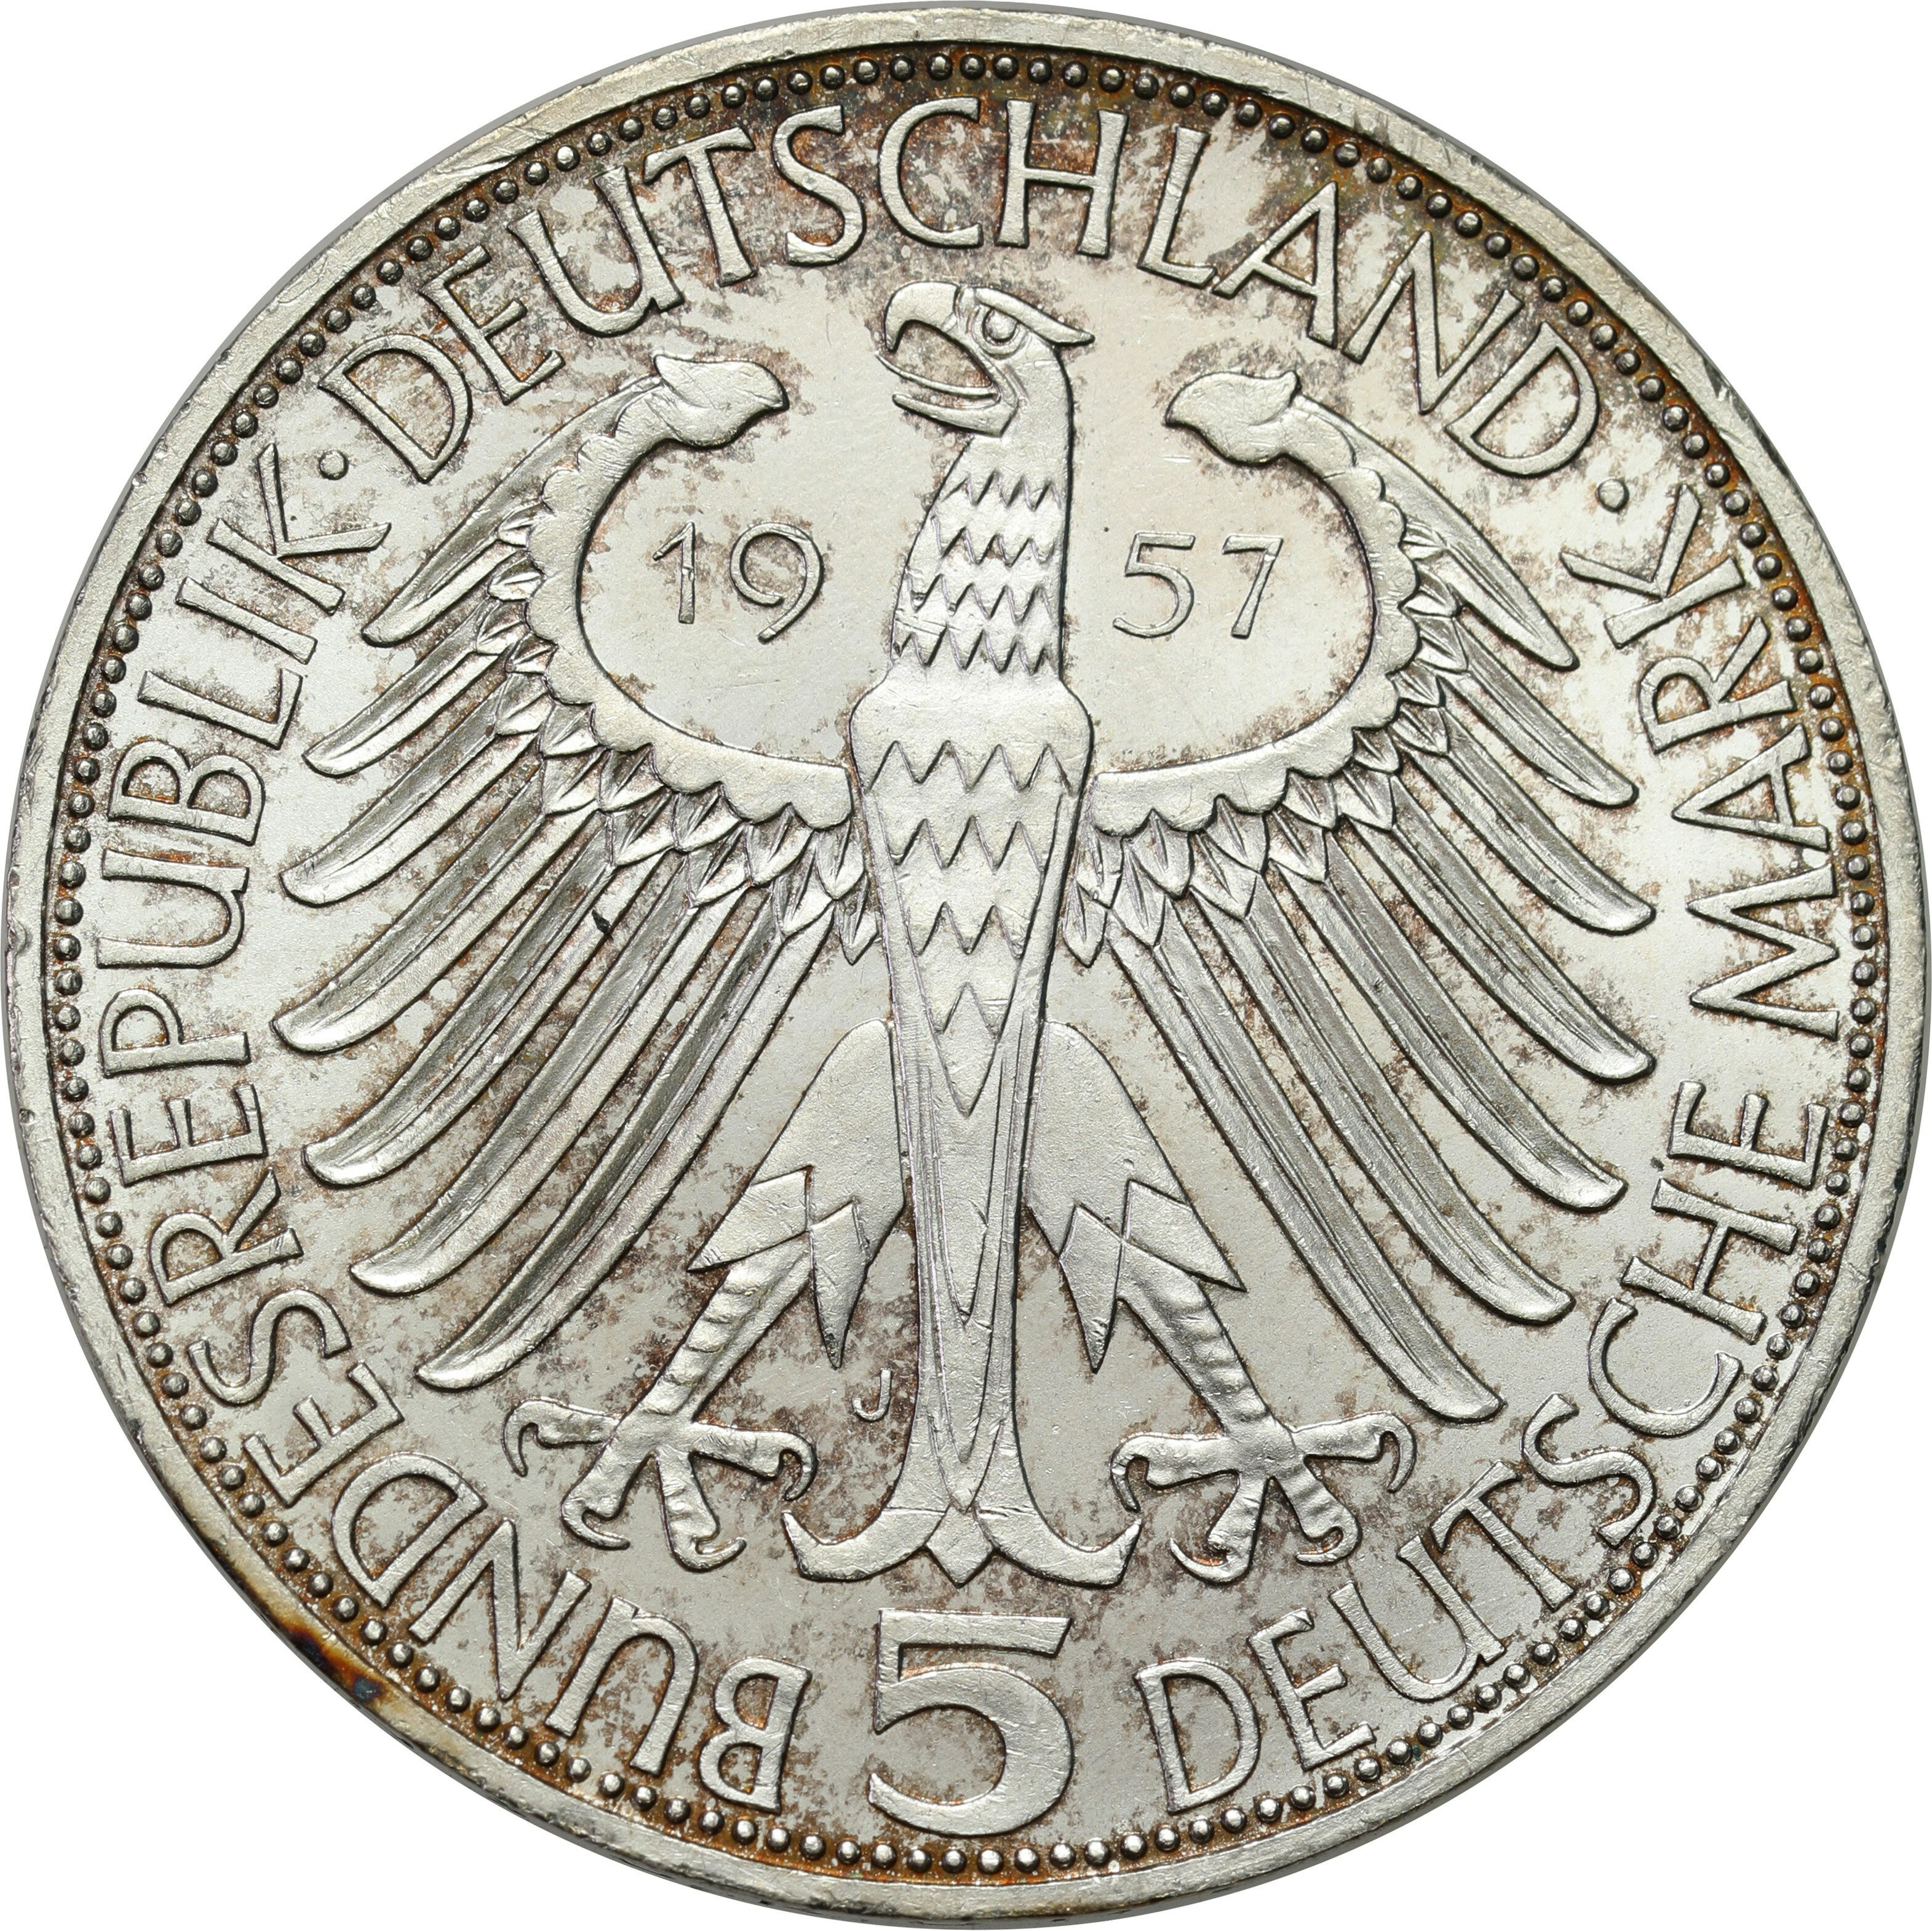 Niemcy, RFN. 5 marek 1957 J, Hamburg, 100. rocznica śmierci Józefa Freiherr von Eichendorff – RZADKIE